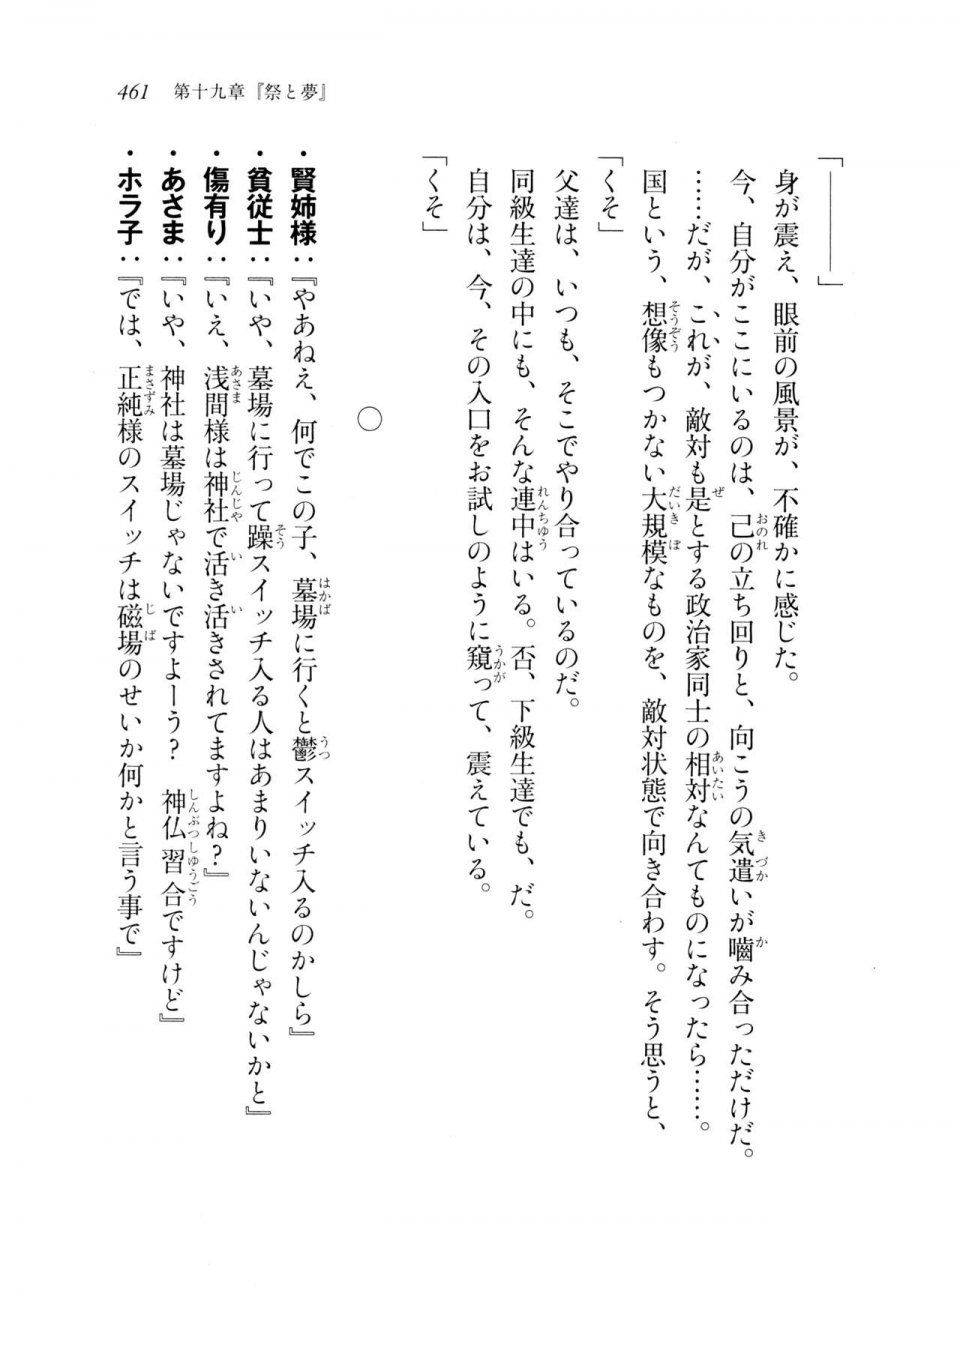 Kyoukai Senjou no Horizon LN Sidestory Vol 2 - Photo #459